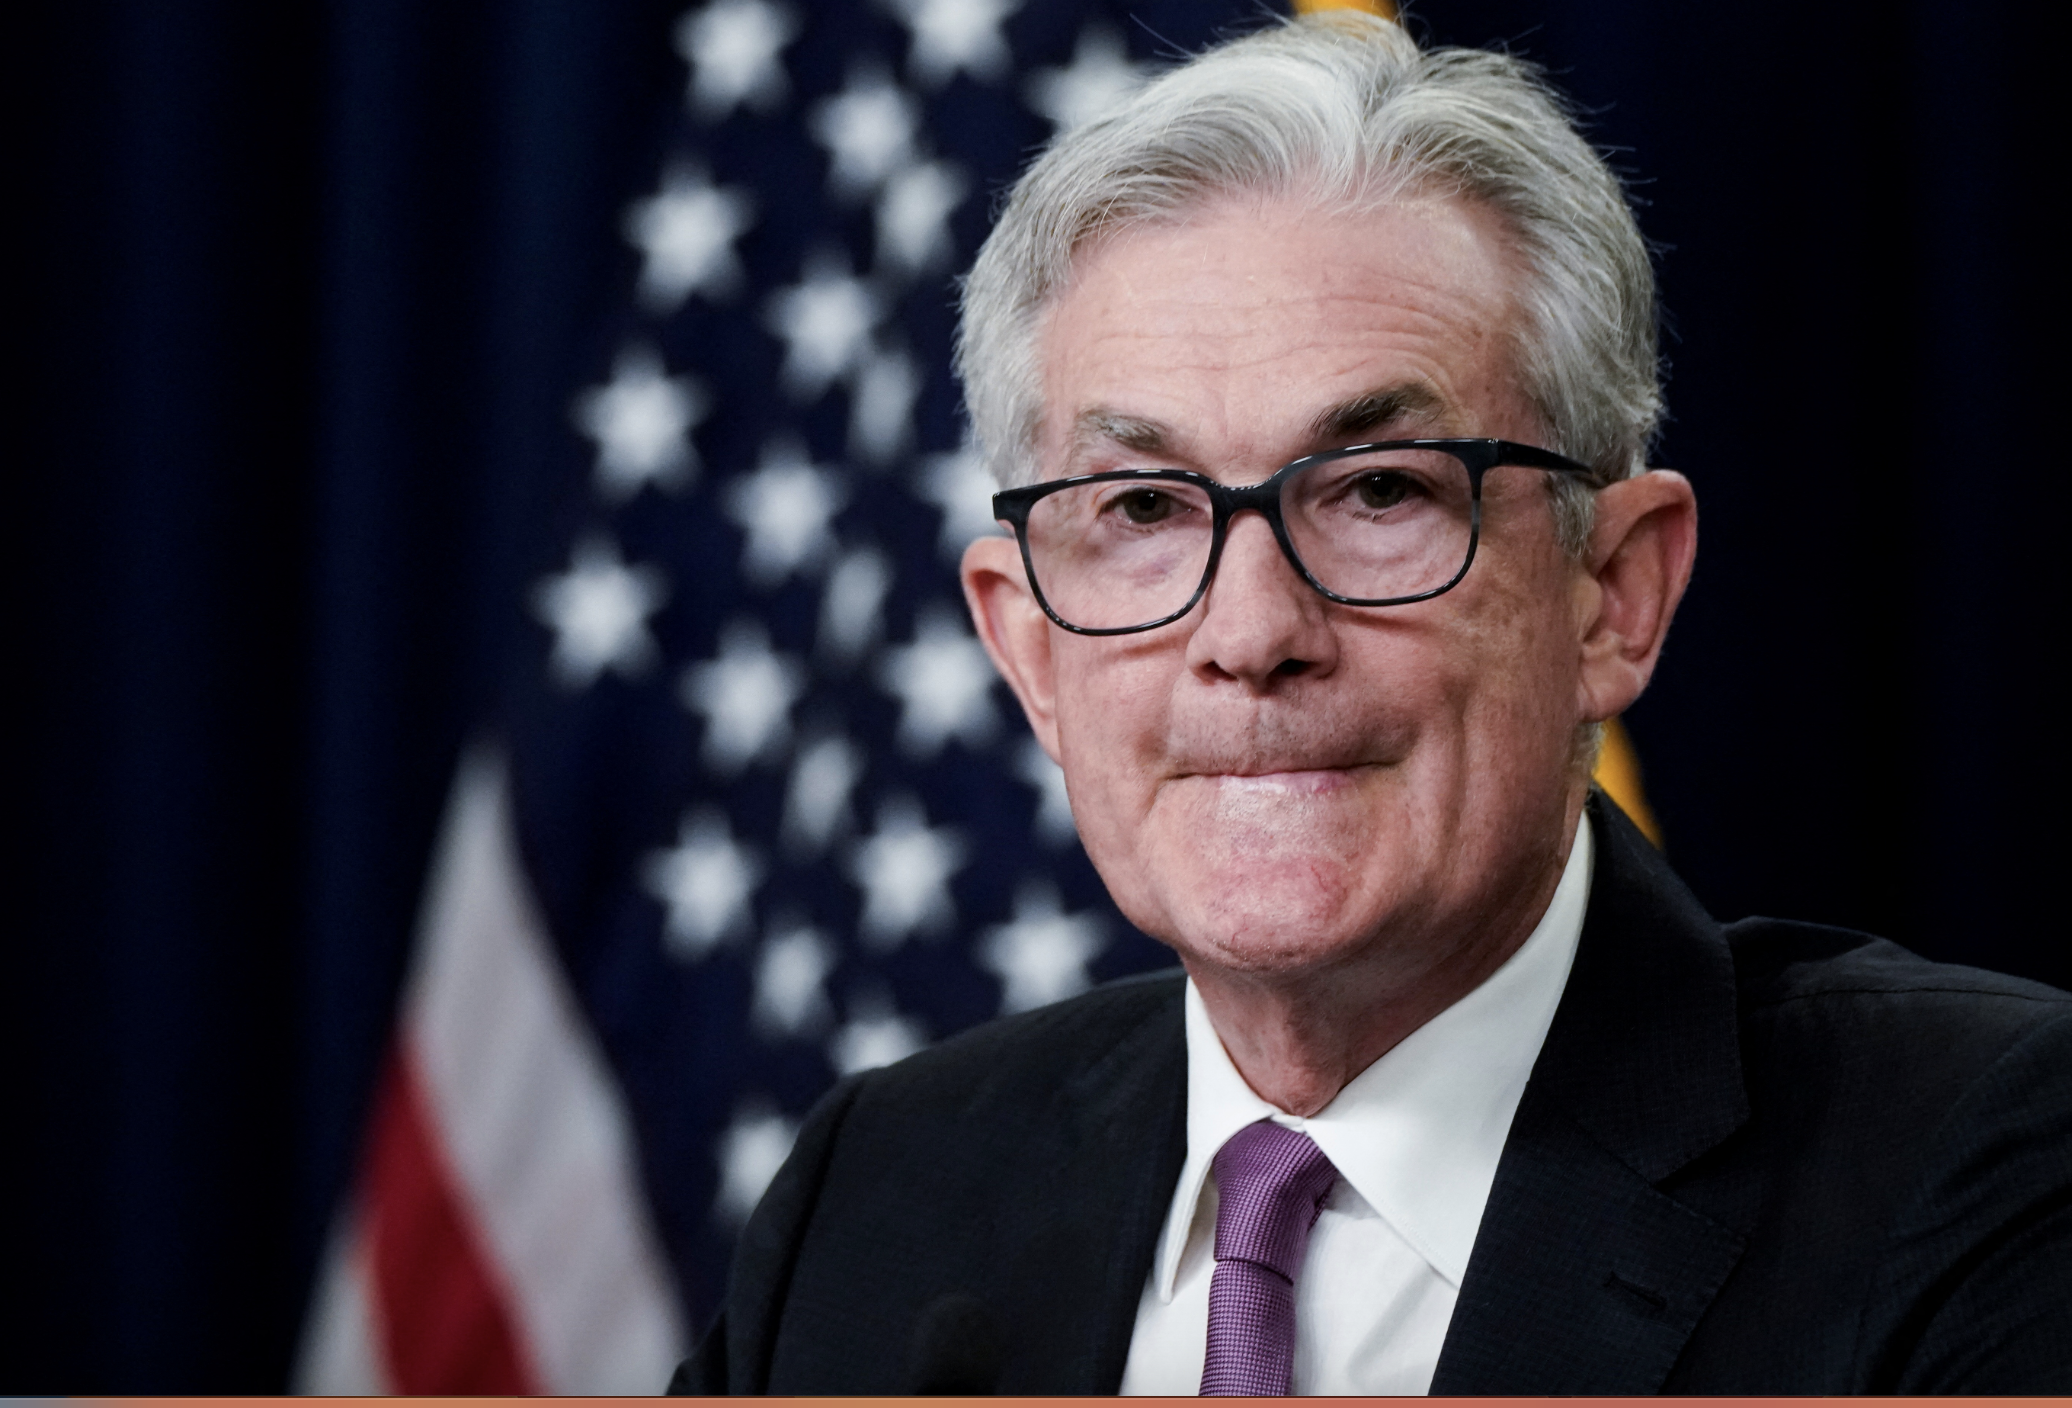 Mờ mit trong chính sách của Fed đã ảnh hưởng đến giá vàng